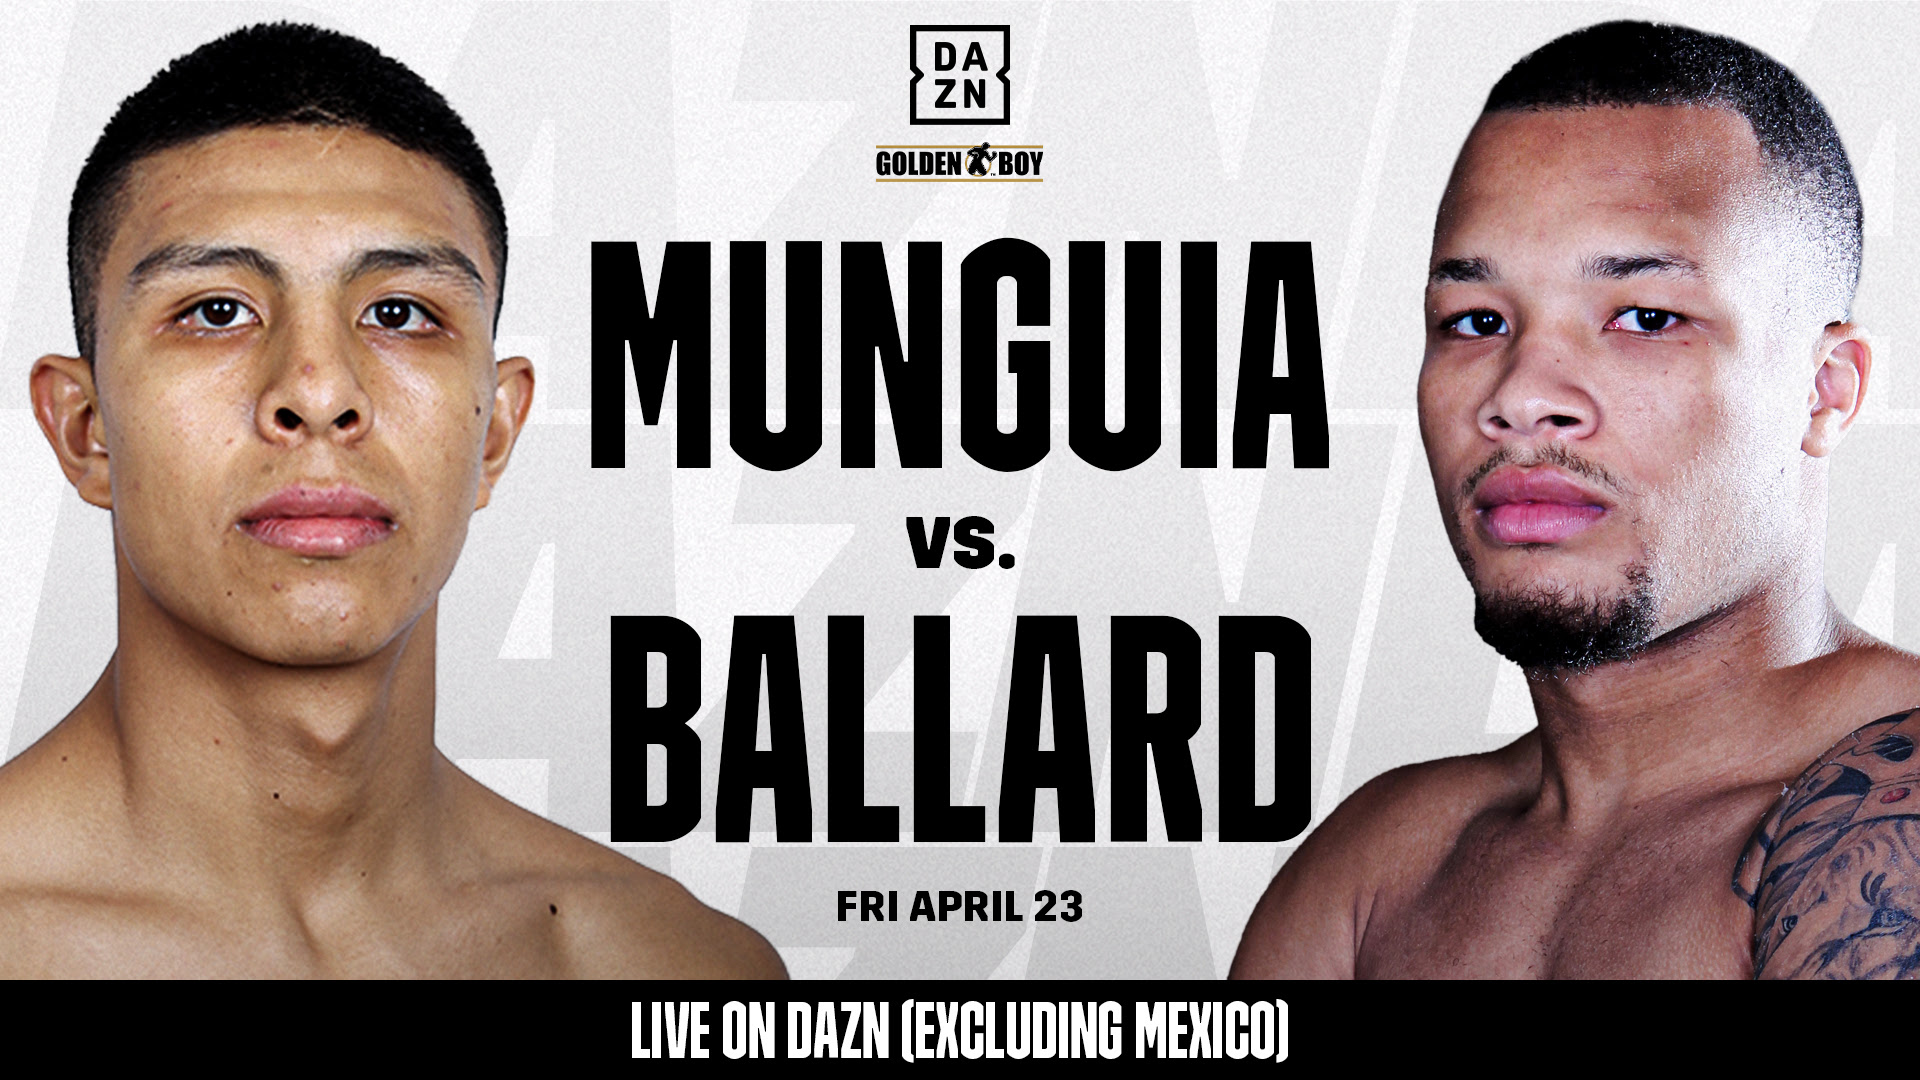 Jaime Munguia peleará ante D'mitrius Ballard el 23 de abril en El Paso, Texas.